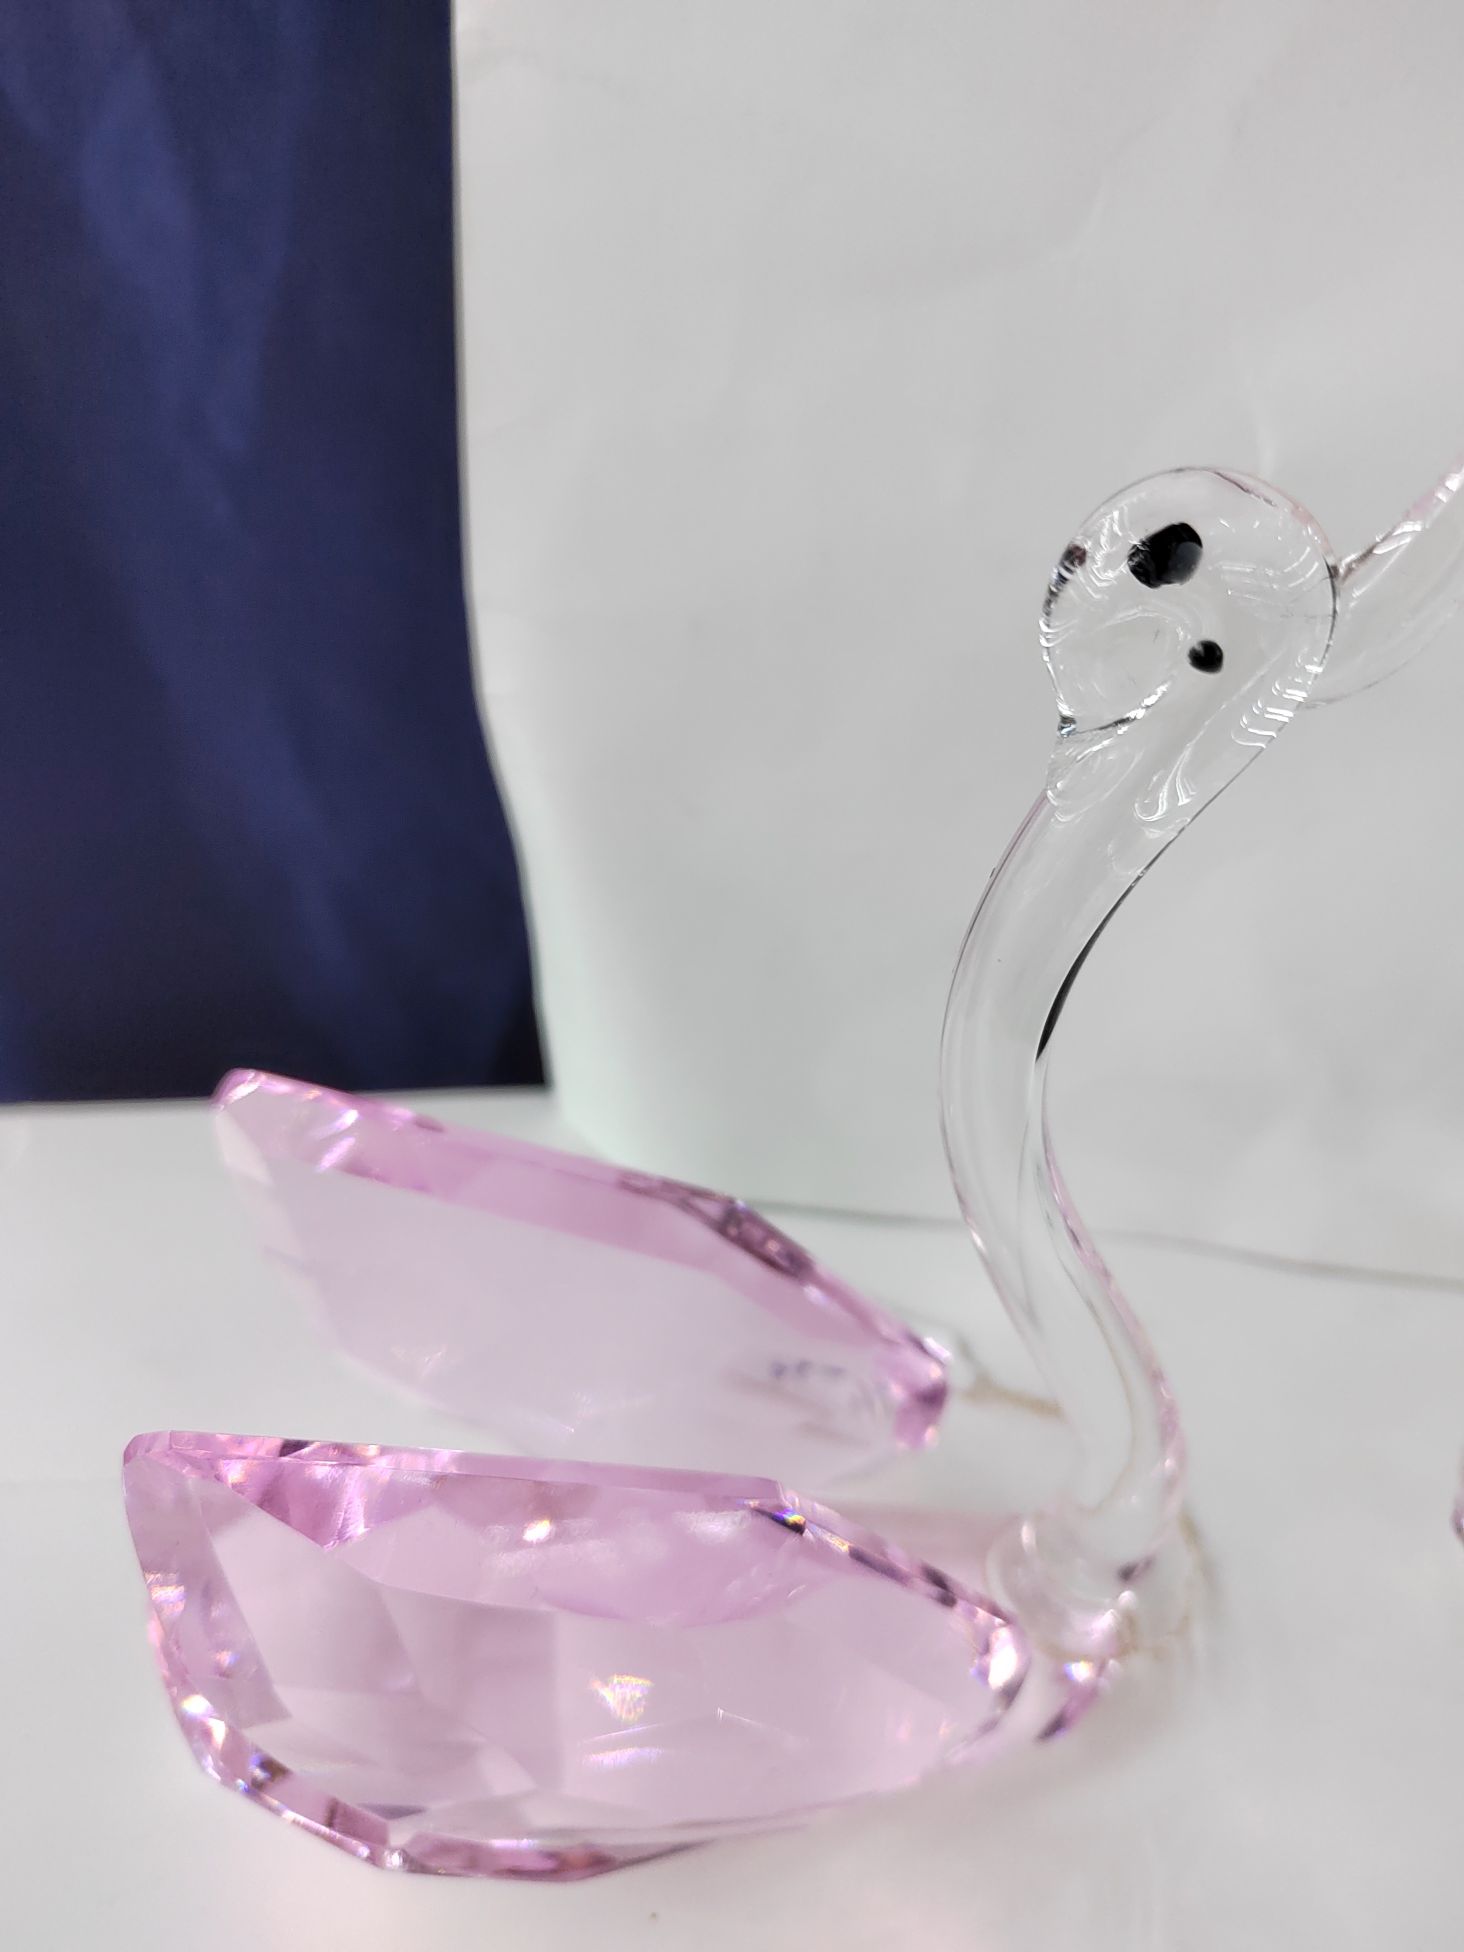 思文工艺水晶玻璃120mm粉色天鹅摆件7887—025详情图2